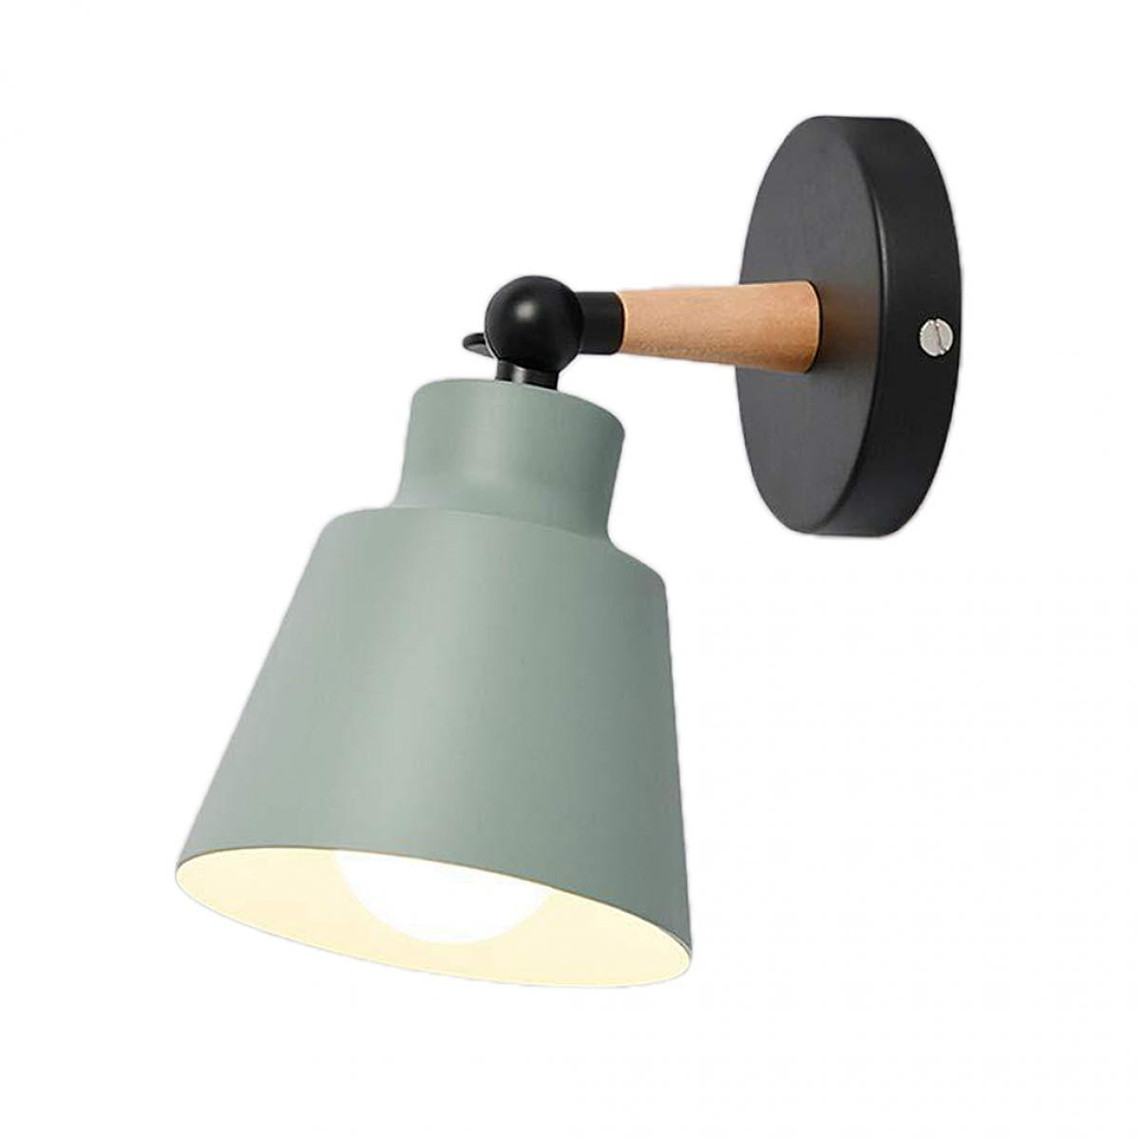 Moderne Acrylique Applique pour Séjour Chambres à Coucher avec Argent/Bande Noire Allée Clair Lampe de Chevet Arrière-Plan Décorative Lumières LED Lampe Murale